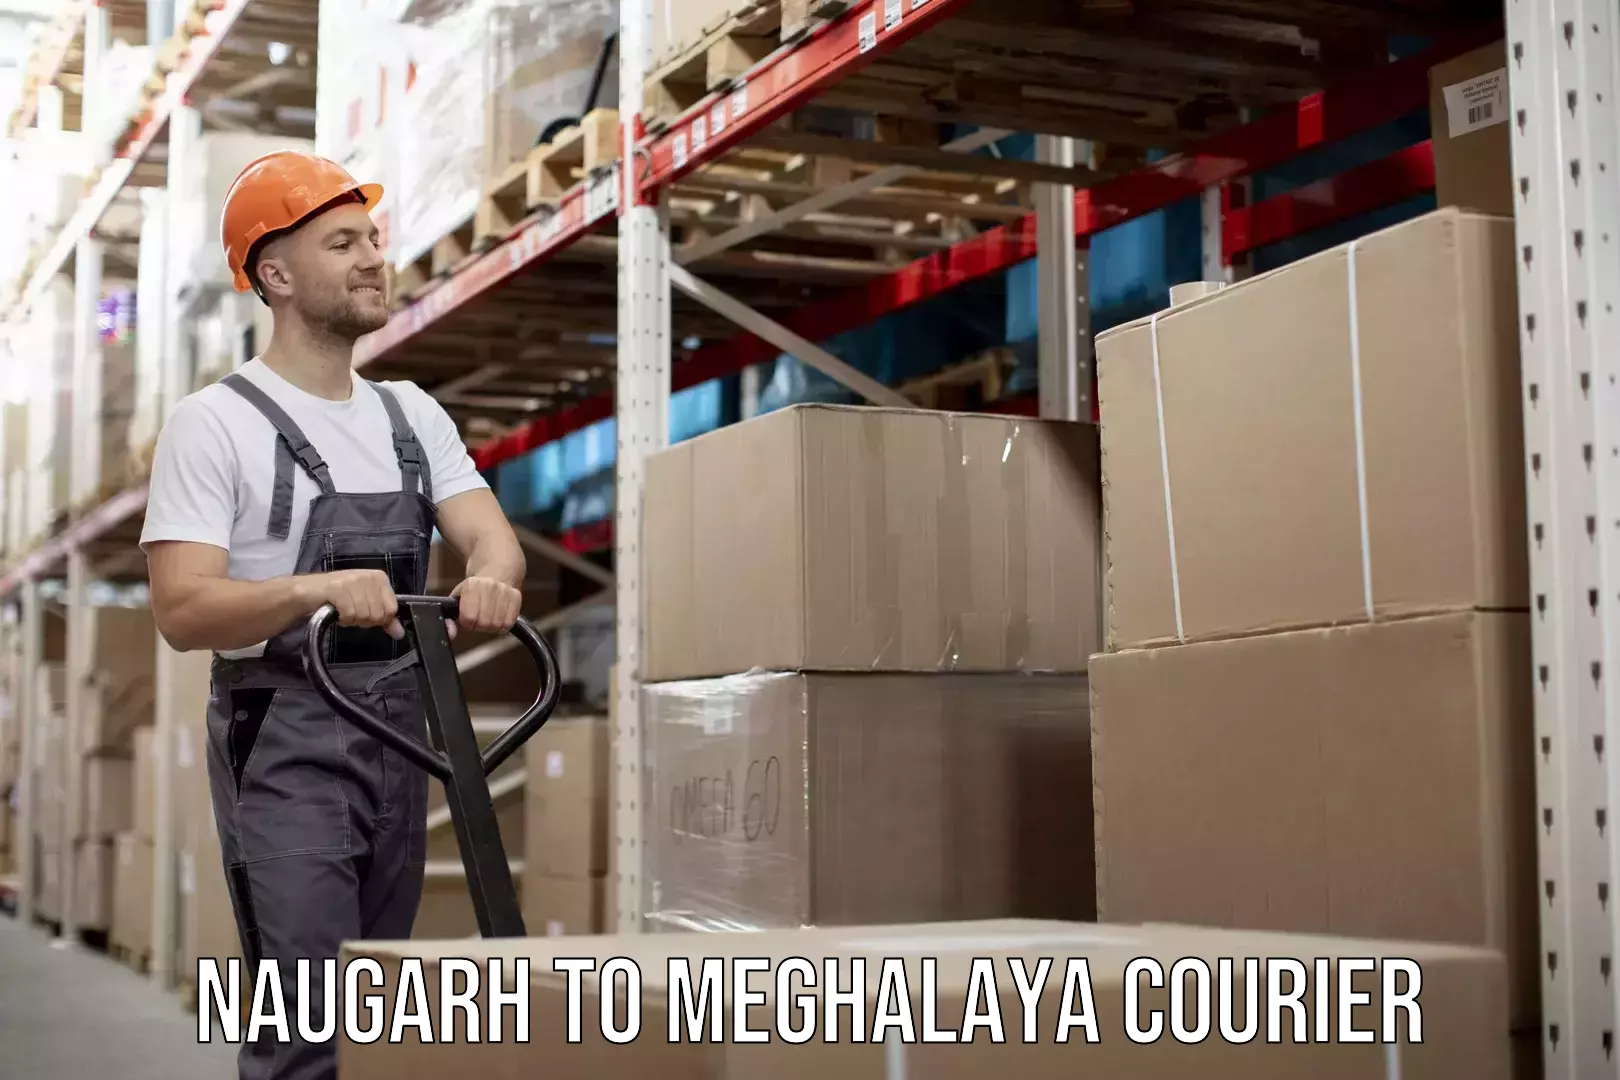 Furniture moving experts Naugarh to Meghalaya